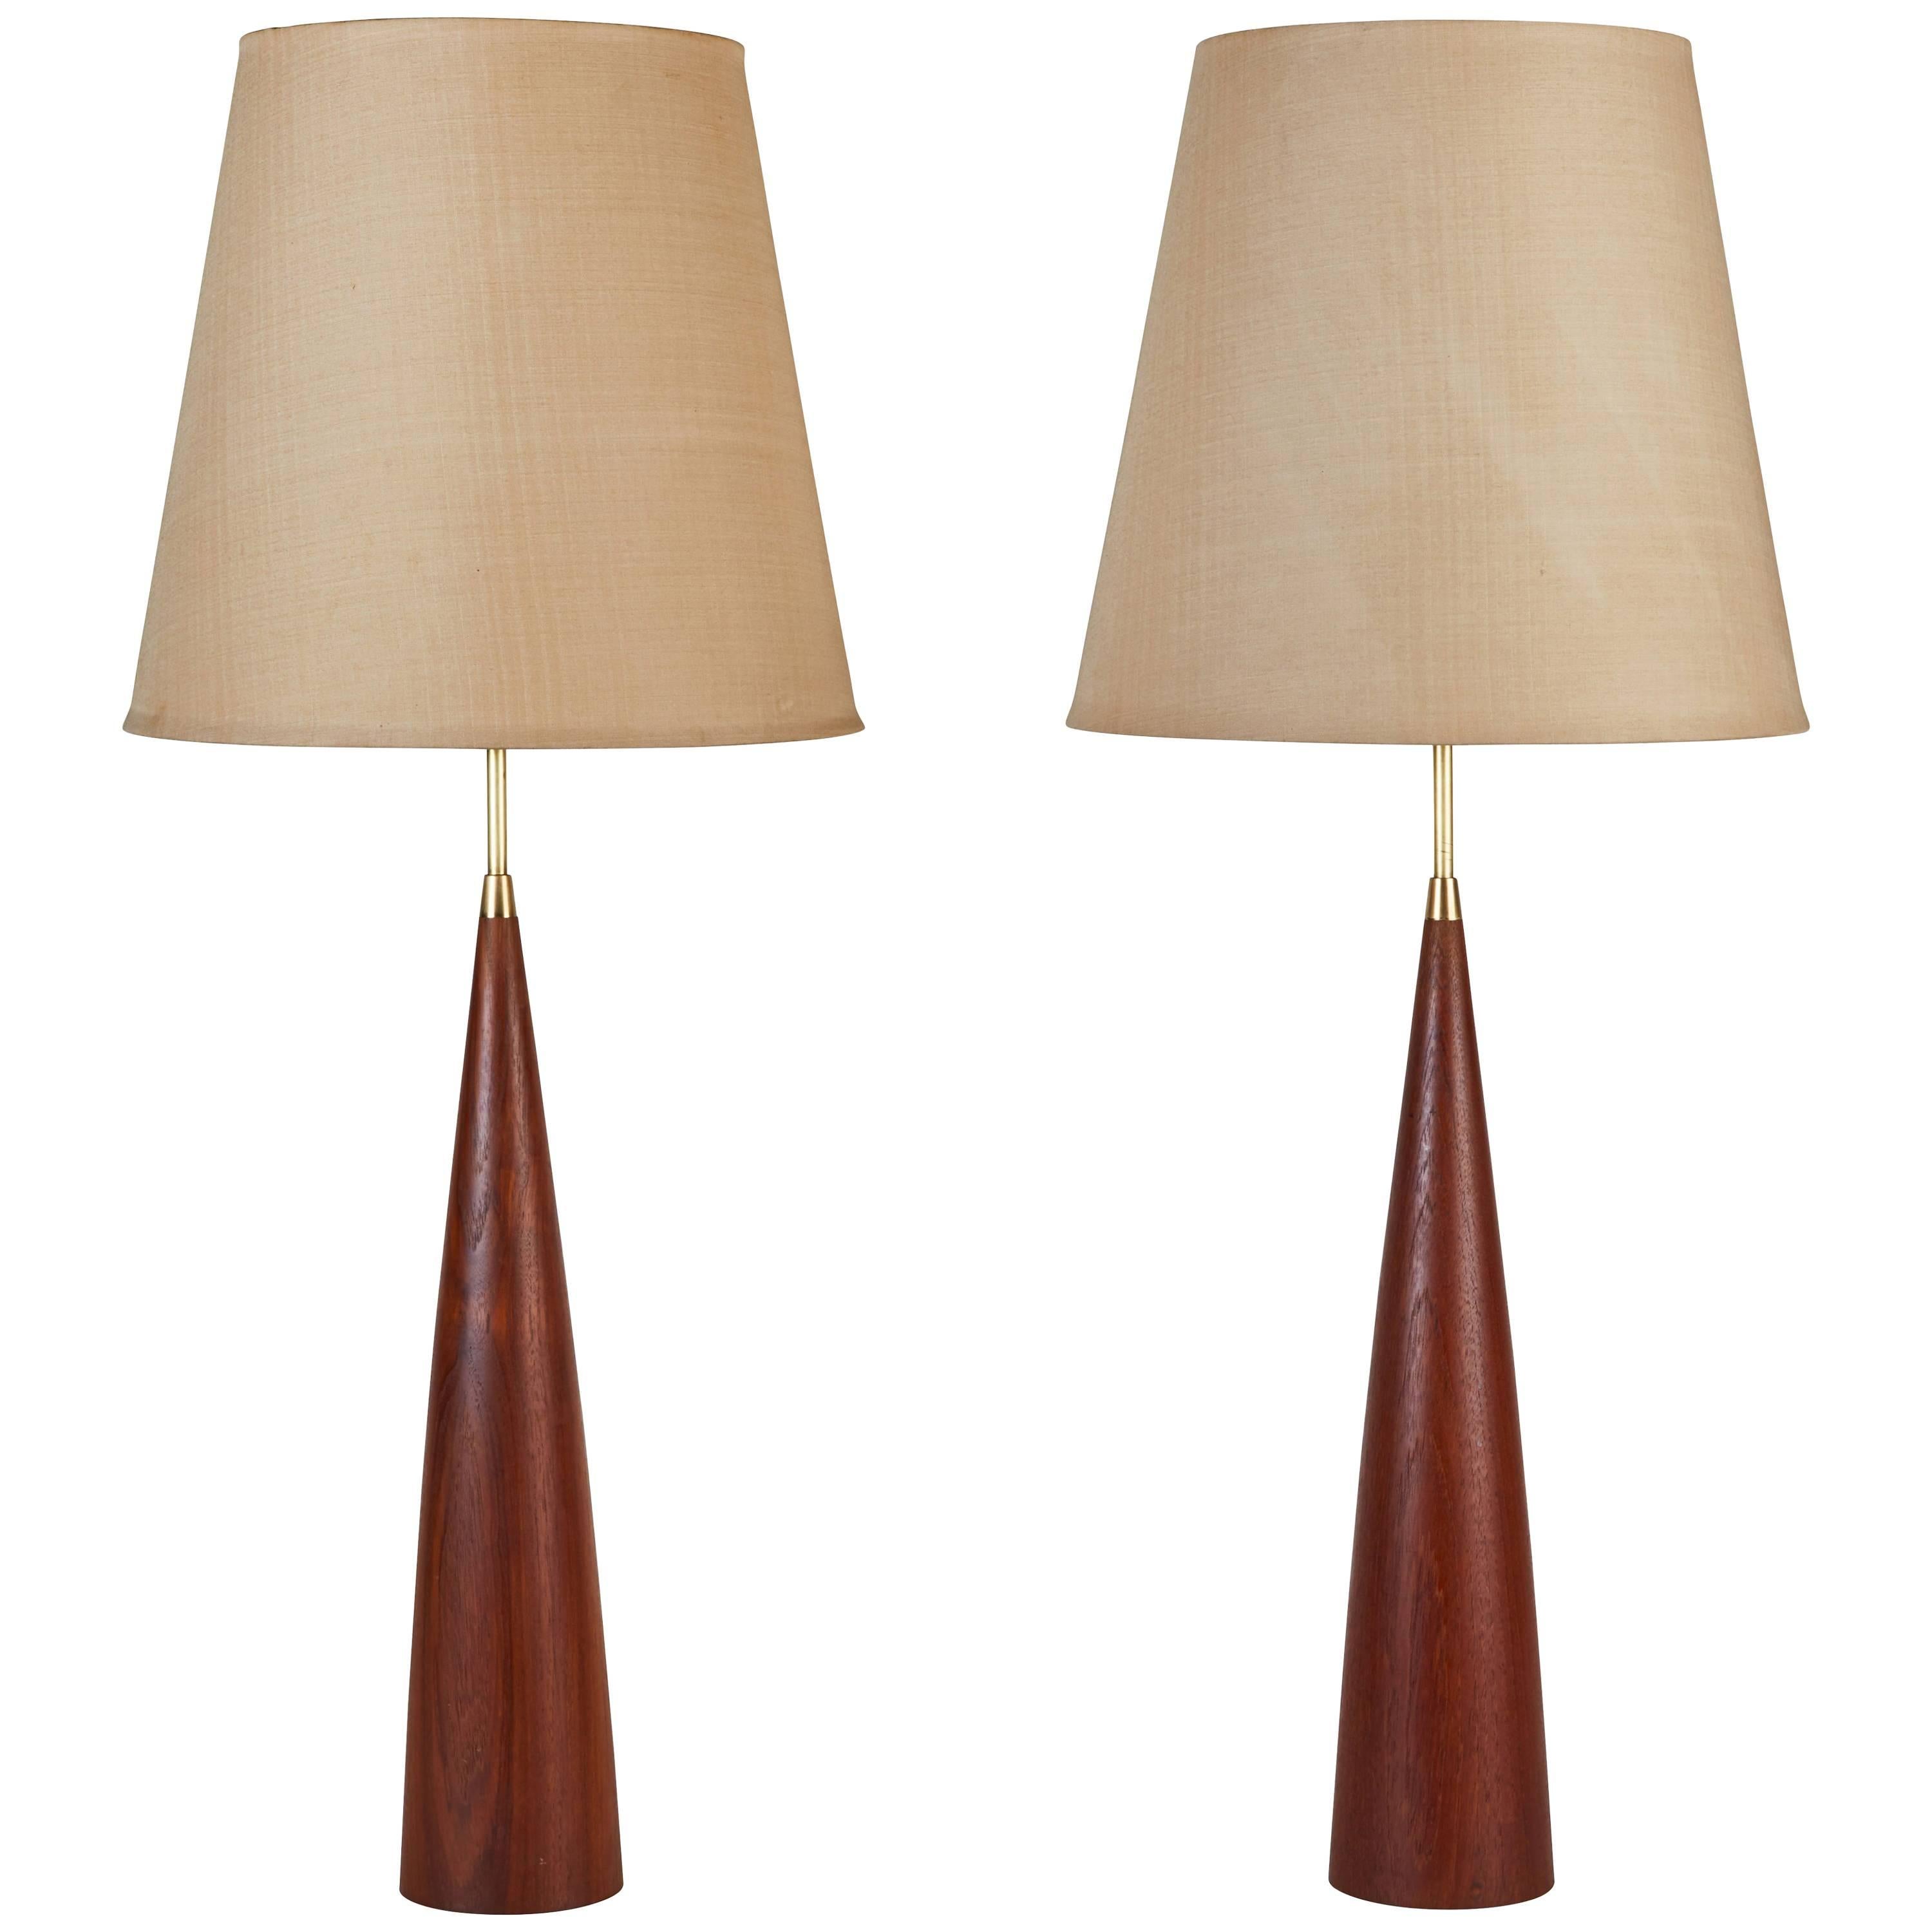 Pair of Teak Swedish Table Lamps